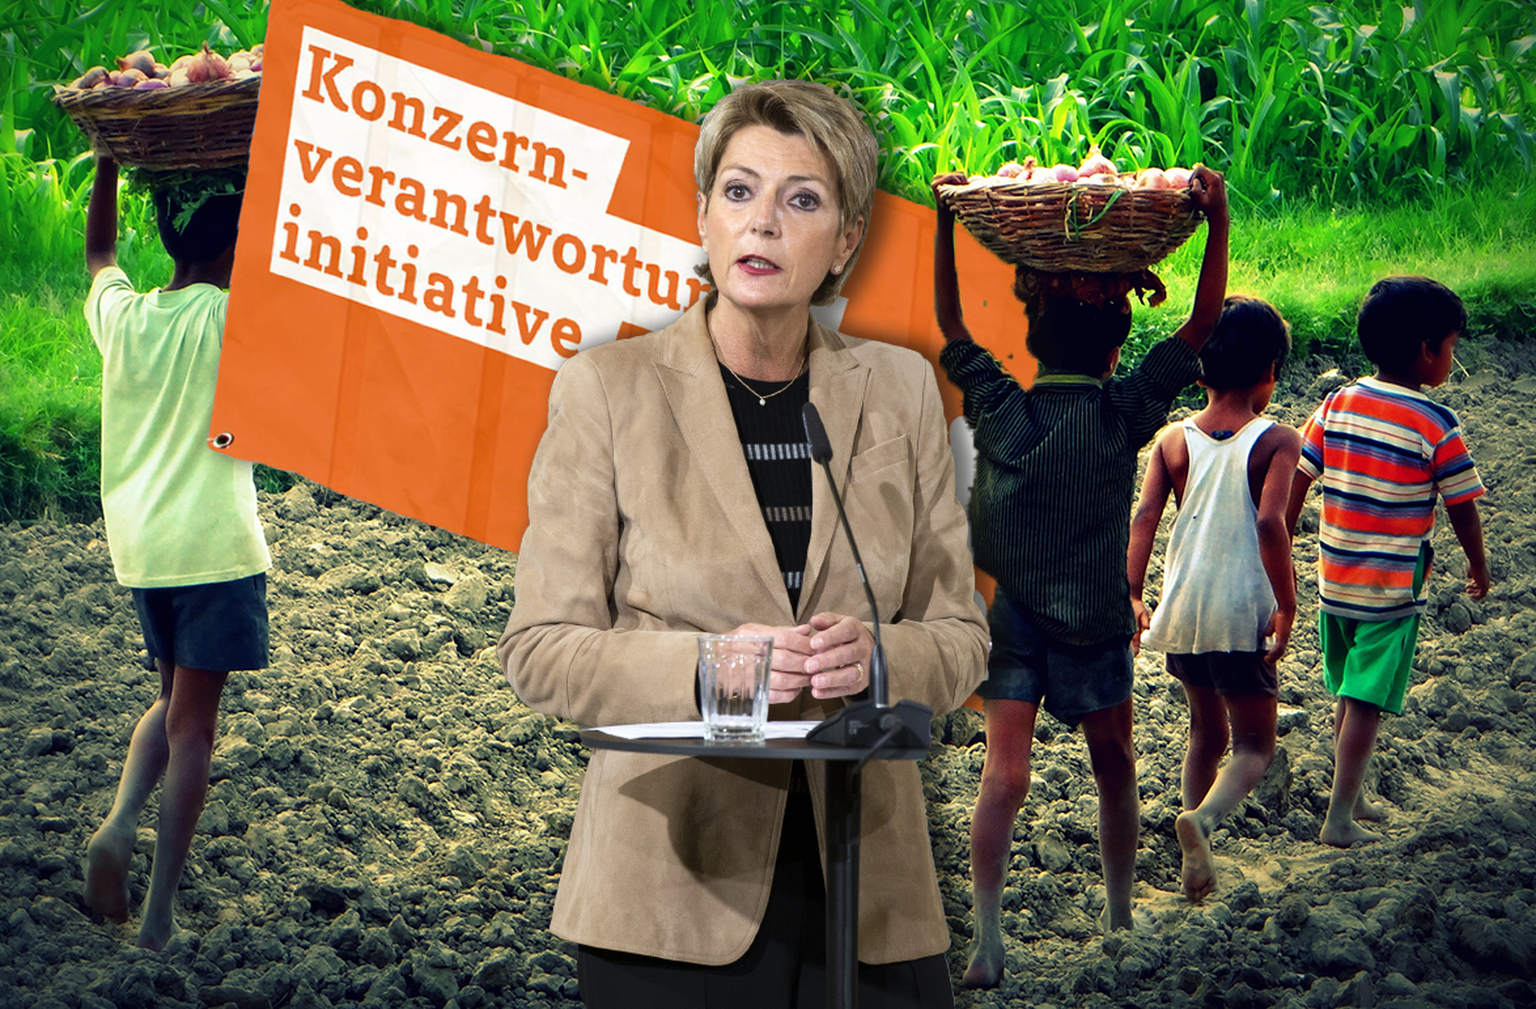 Auch die Bundesrätin Karin Keller-Sutter verbreitete Falschaussagen über die Konzernverantwortungsinitiative.